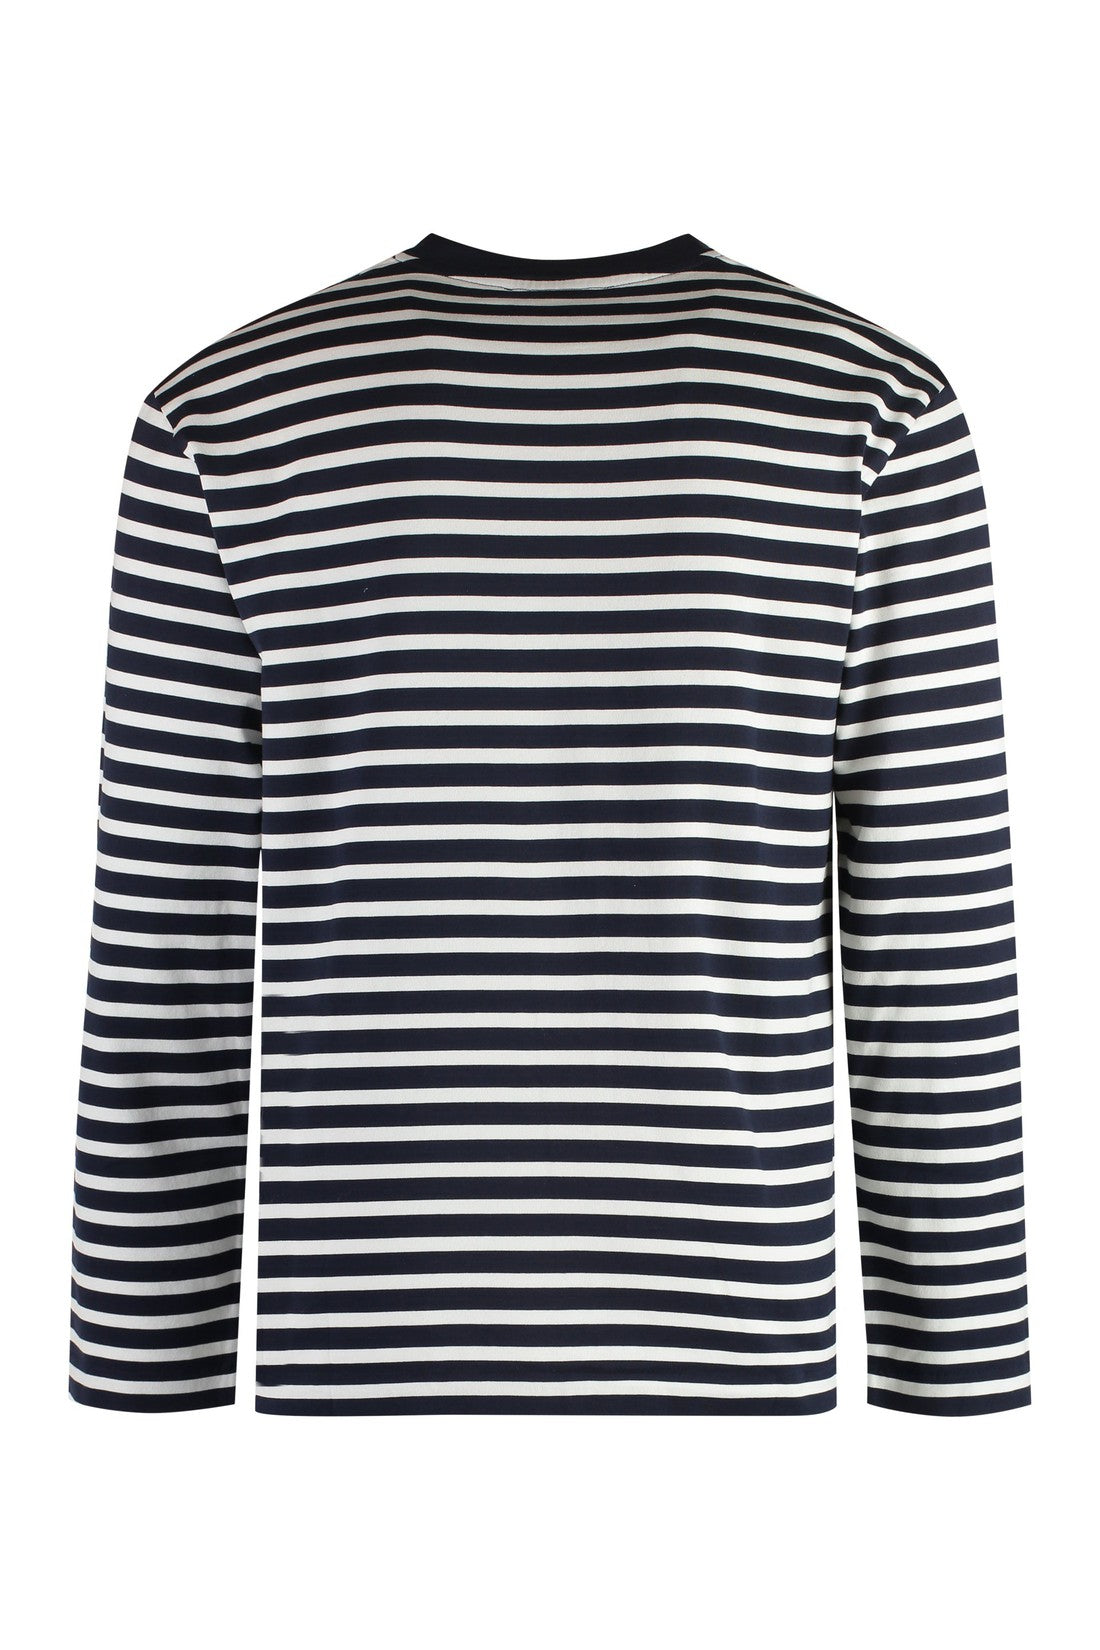 Maison Kitsuné-OUTLET-SALE-Striped cotton t-shirt-ARCHIVIST